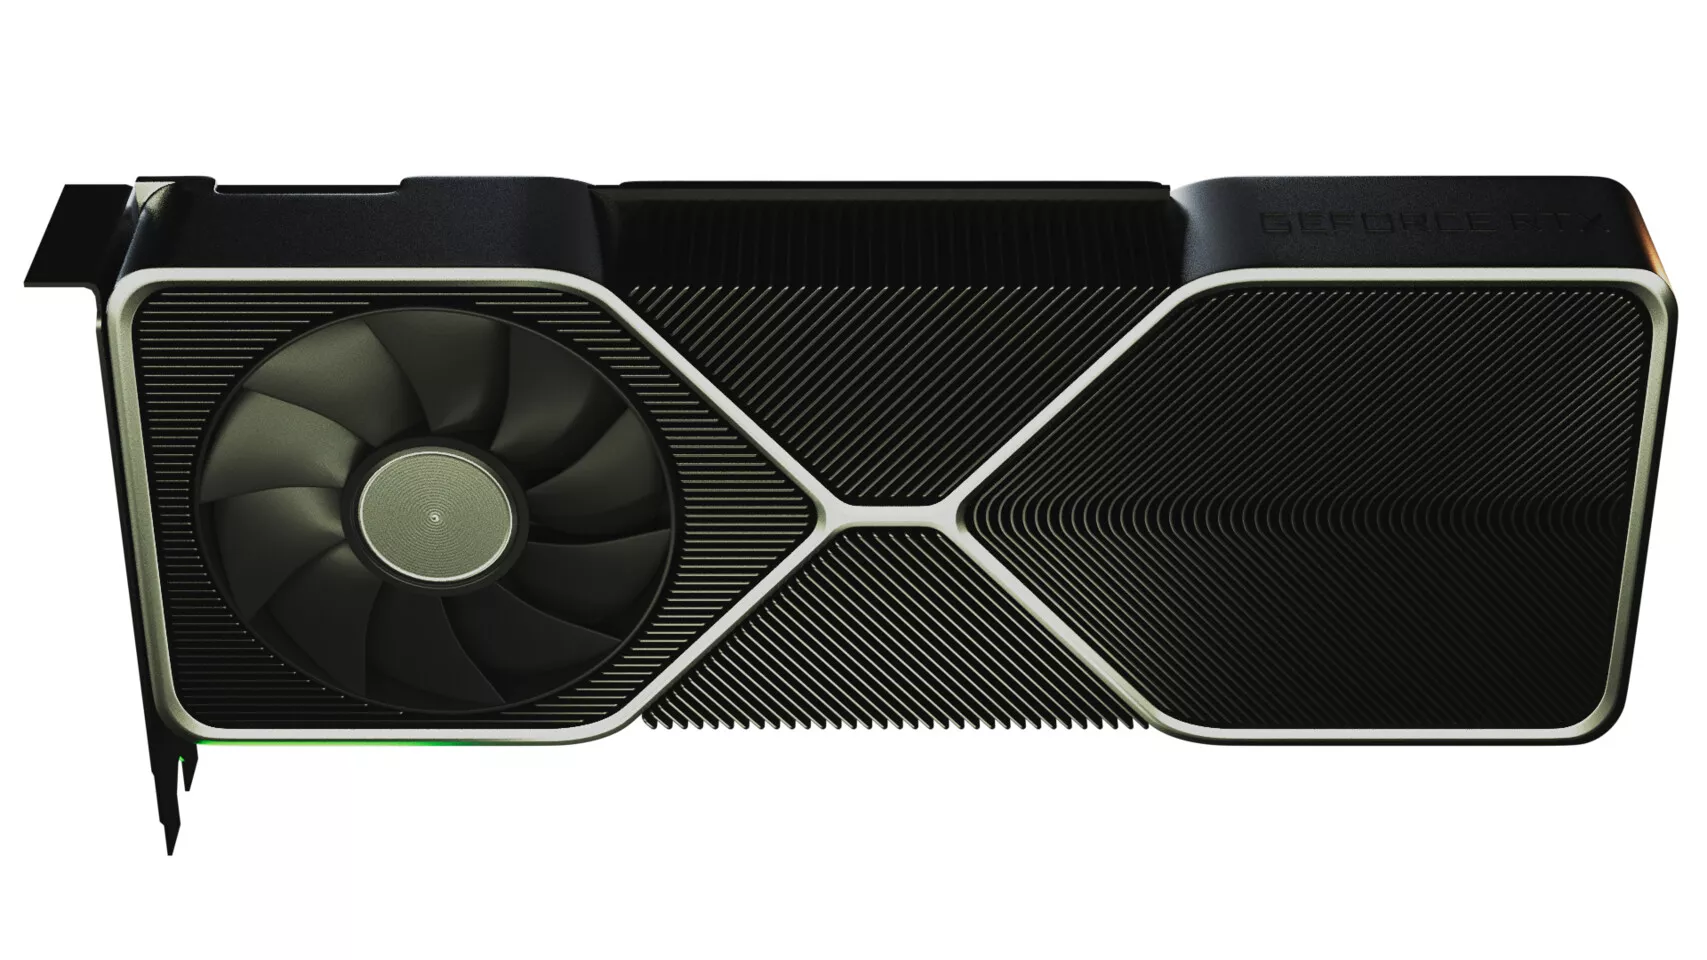 NVIDIA GeForce RTX 3080 может выглядеть так. Фаны сделали рендер по фото